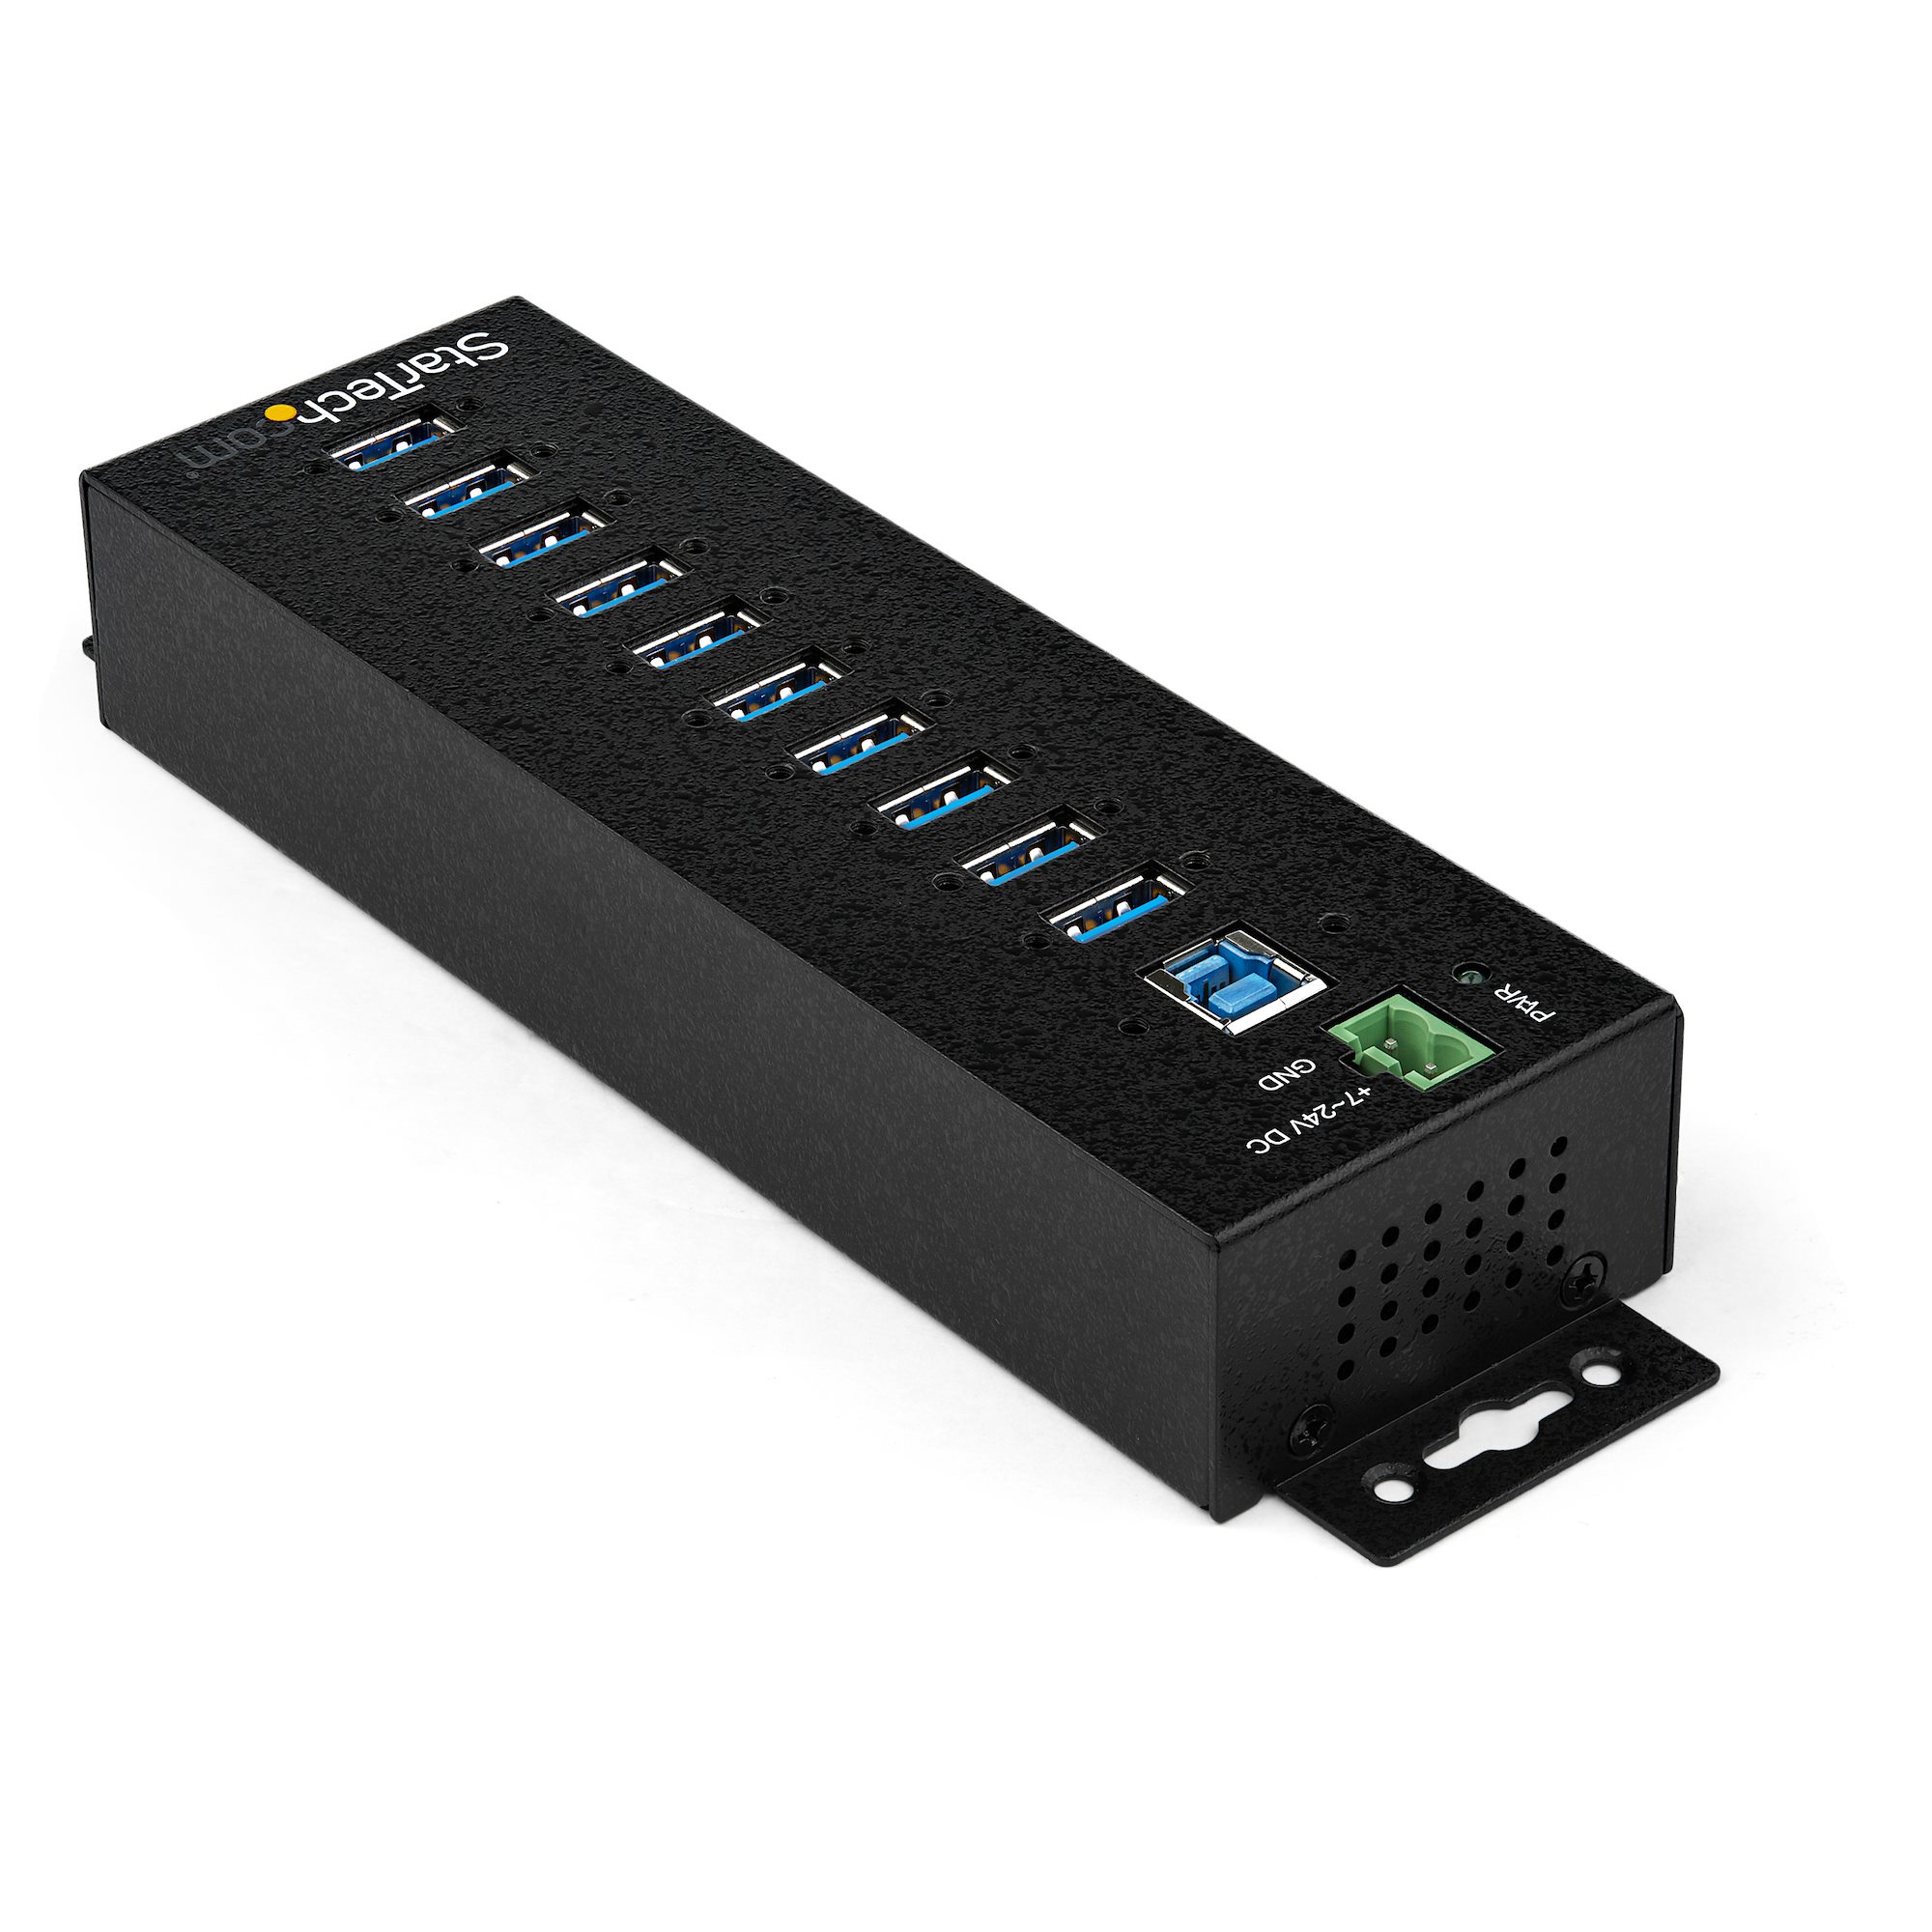 Concentrateur USB 3.0 Alimenté 7 ports StarTech - Micro Data BR En